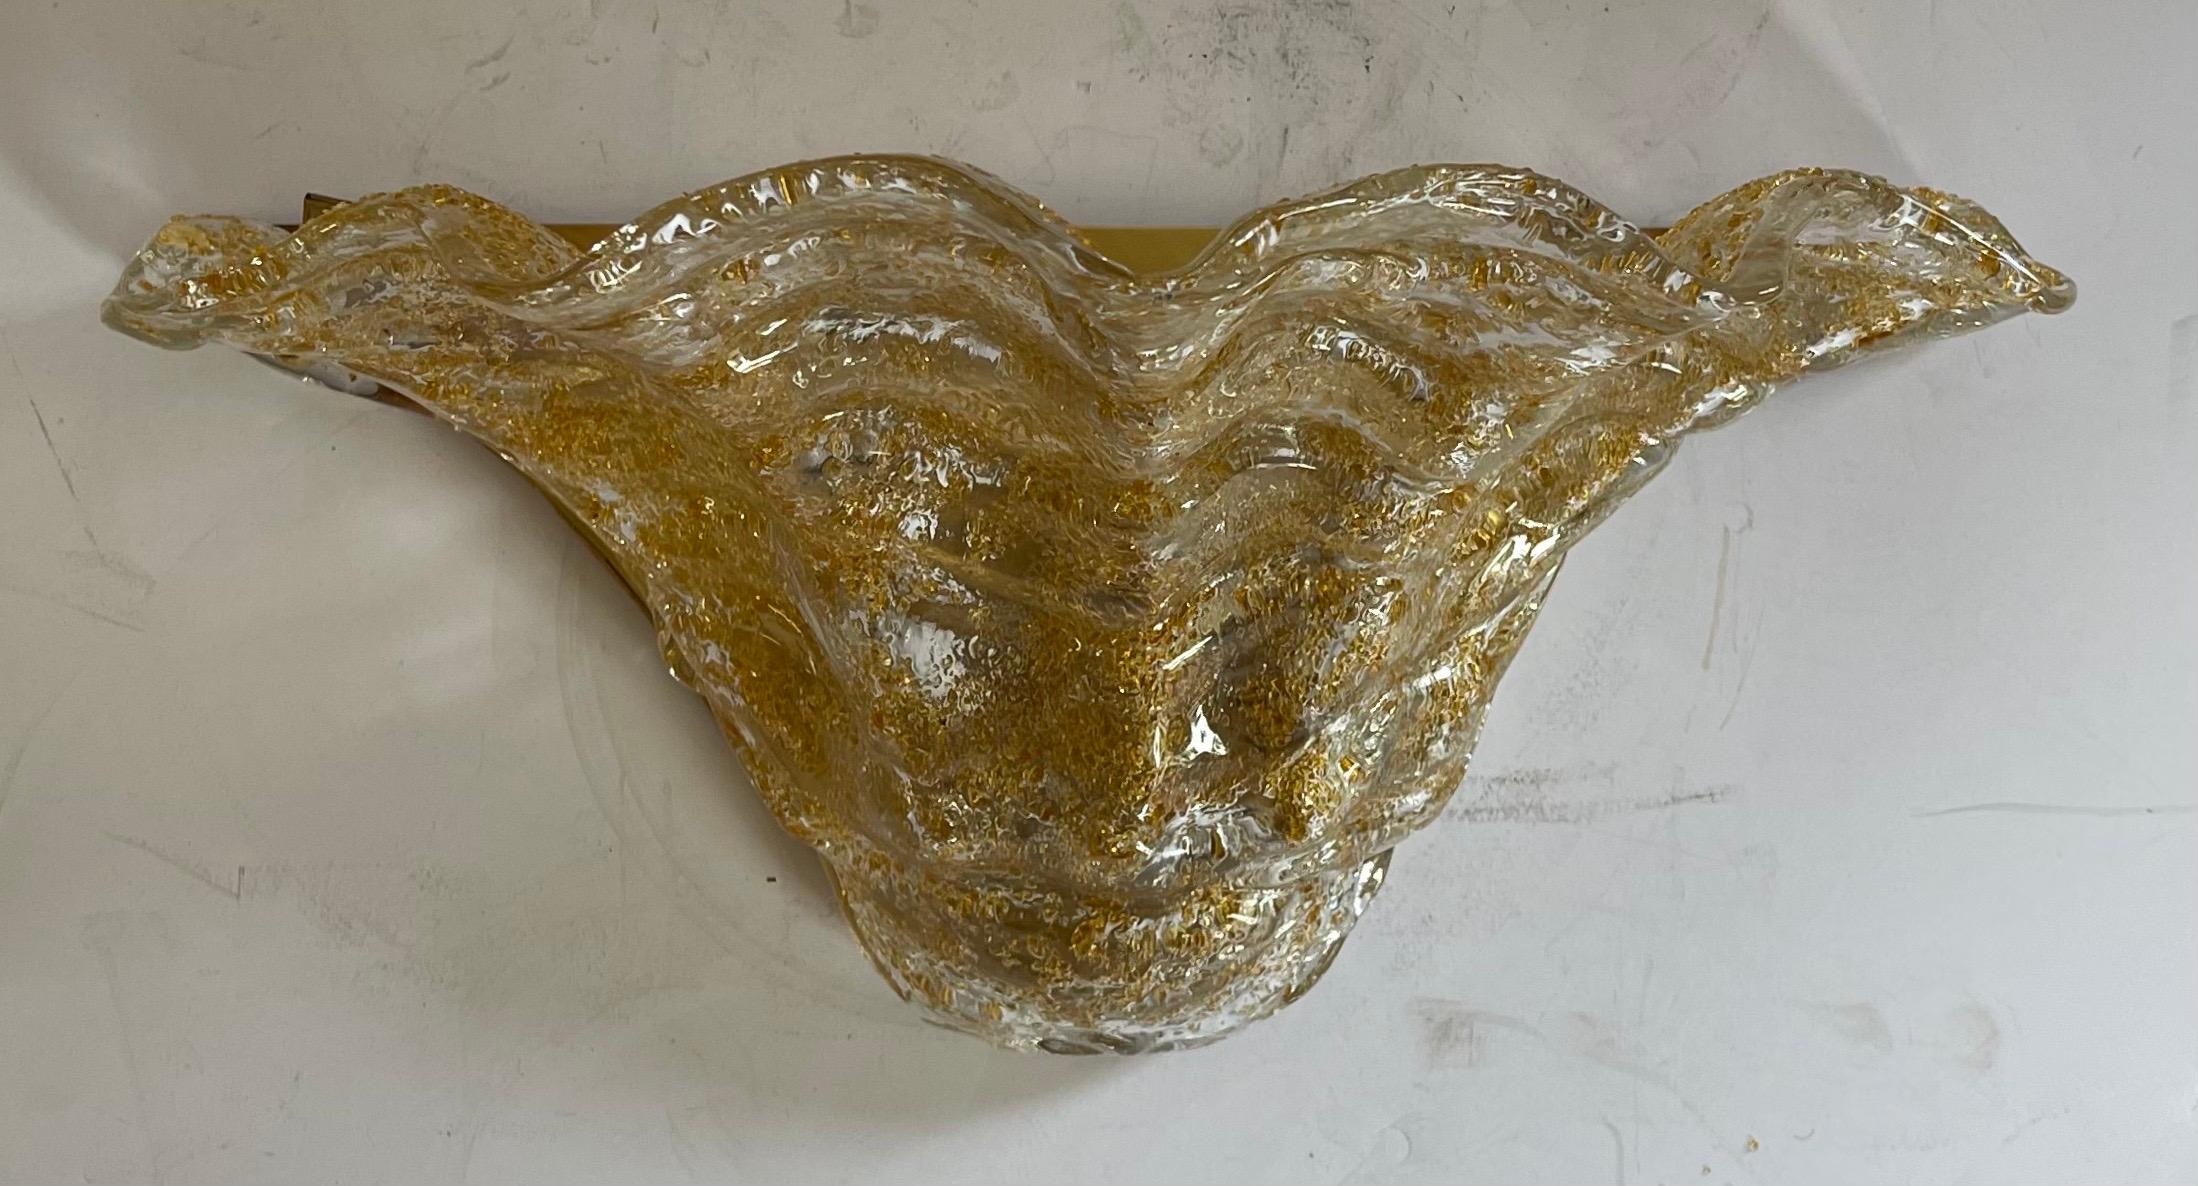 Eine wunderbare große Mid-Century Modern murano gold Kunstglas Satz von drei Wandleuchten mit Bronze Basis, montiert zusammen durch zwei Bronzekugeln.
Komplett neu verkabelt mit zwei Kandelaberfassungen zu je 40 Watt, inklusive aller Montageteile